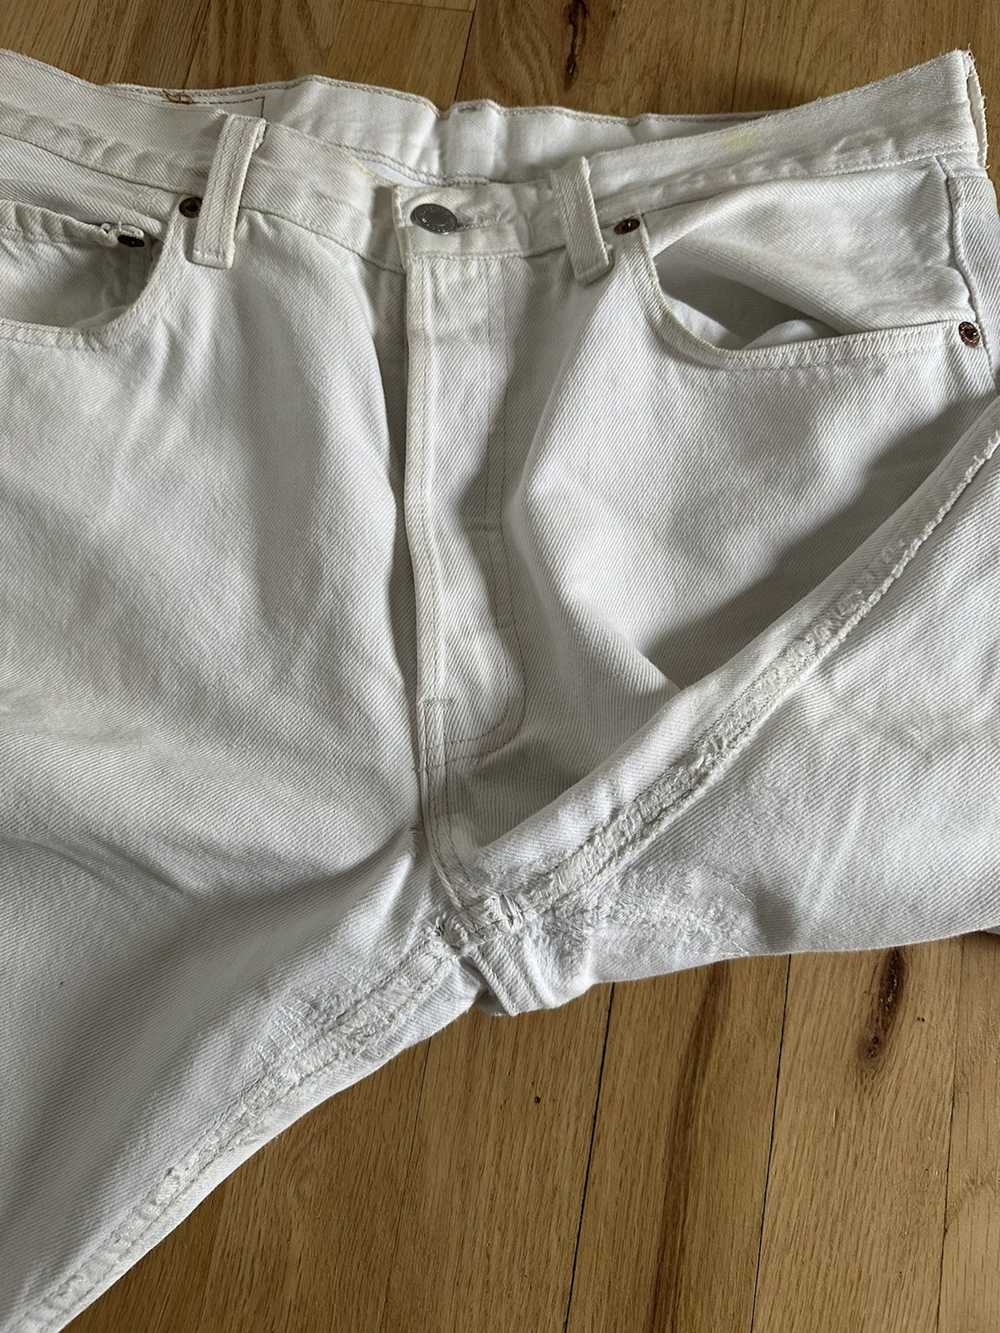 Levi's Vintage White Levi’s 501 Jeans - image 6